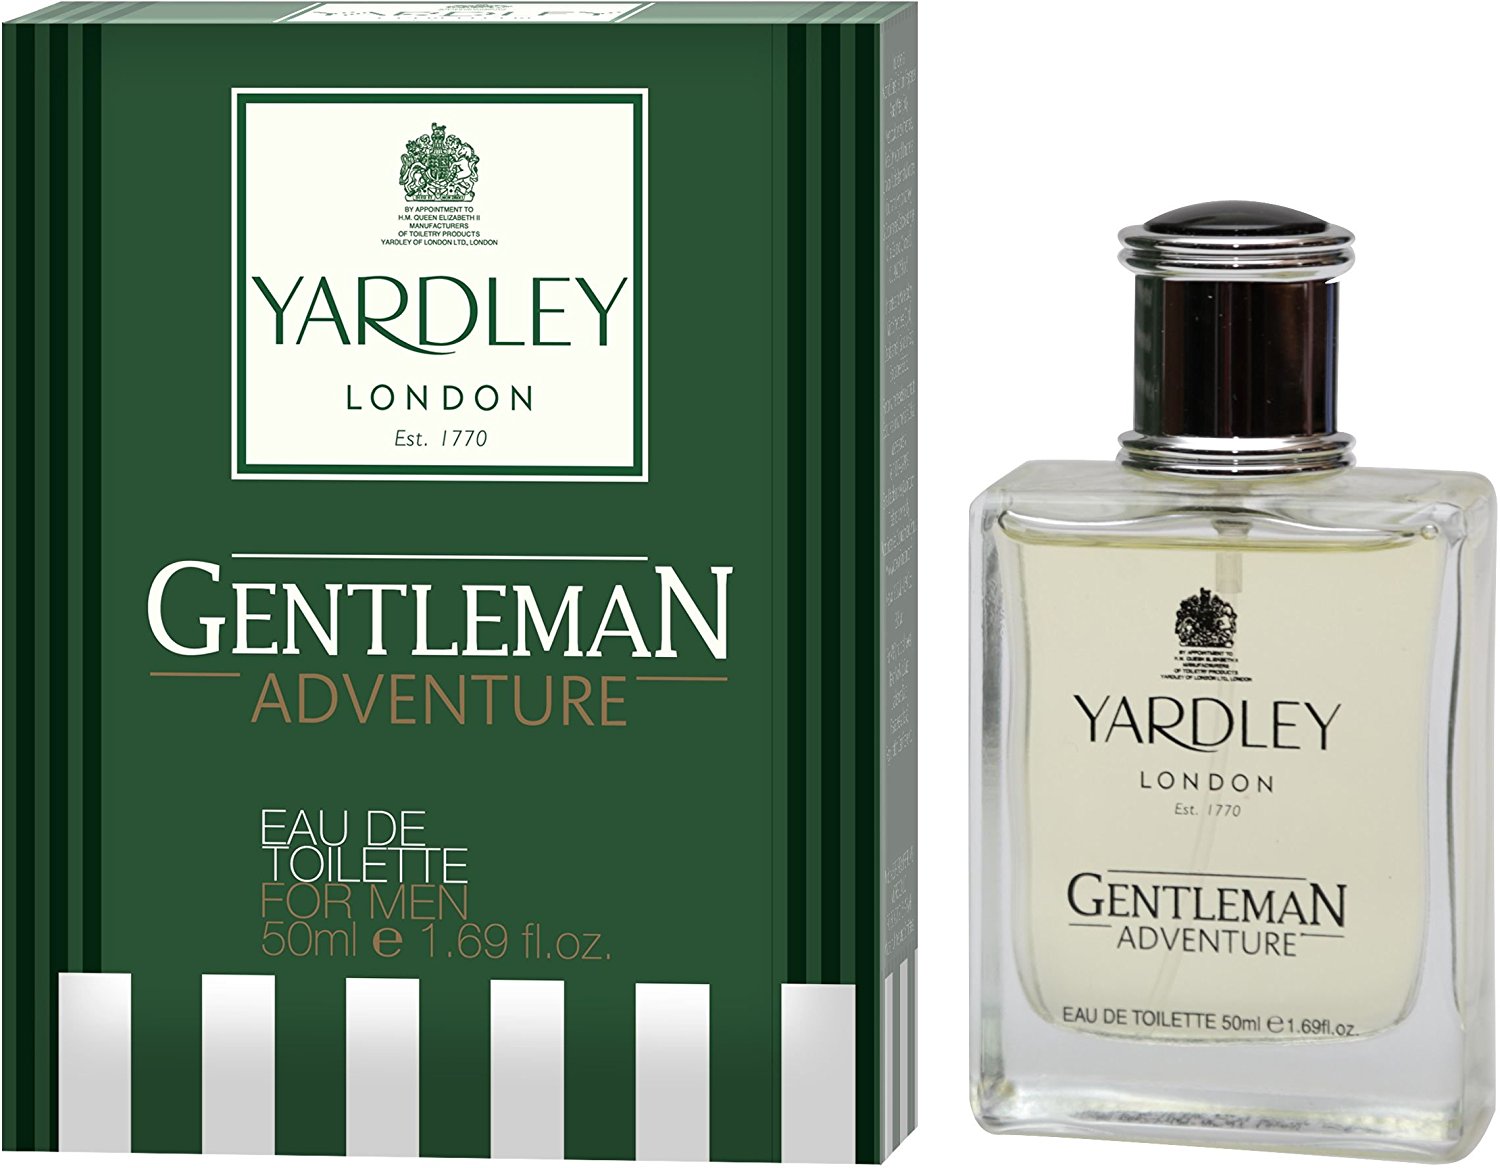 Yardley London - Gentleman Adventure Eau de Toilette, 50ml